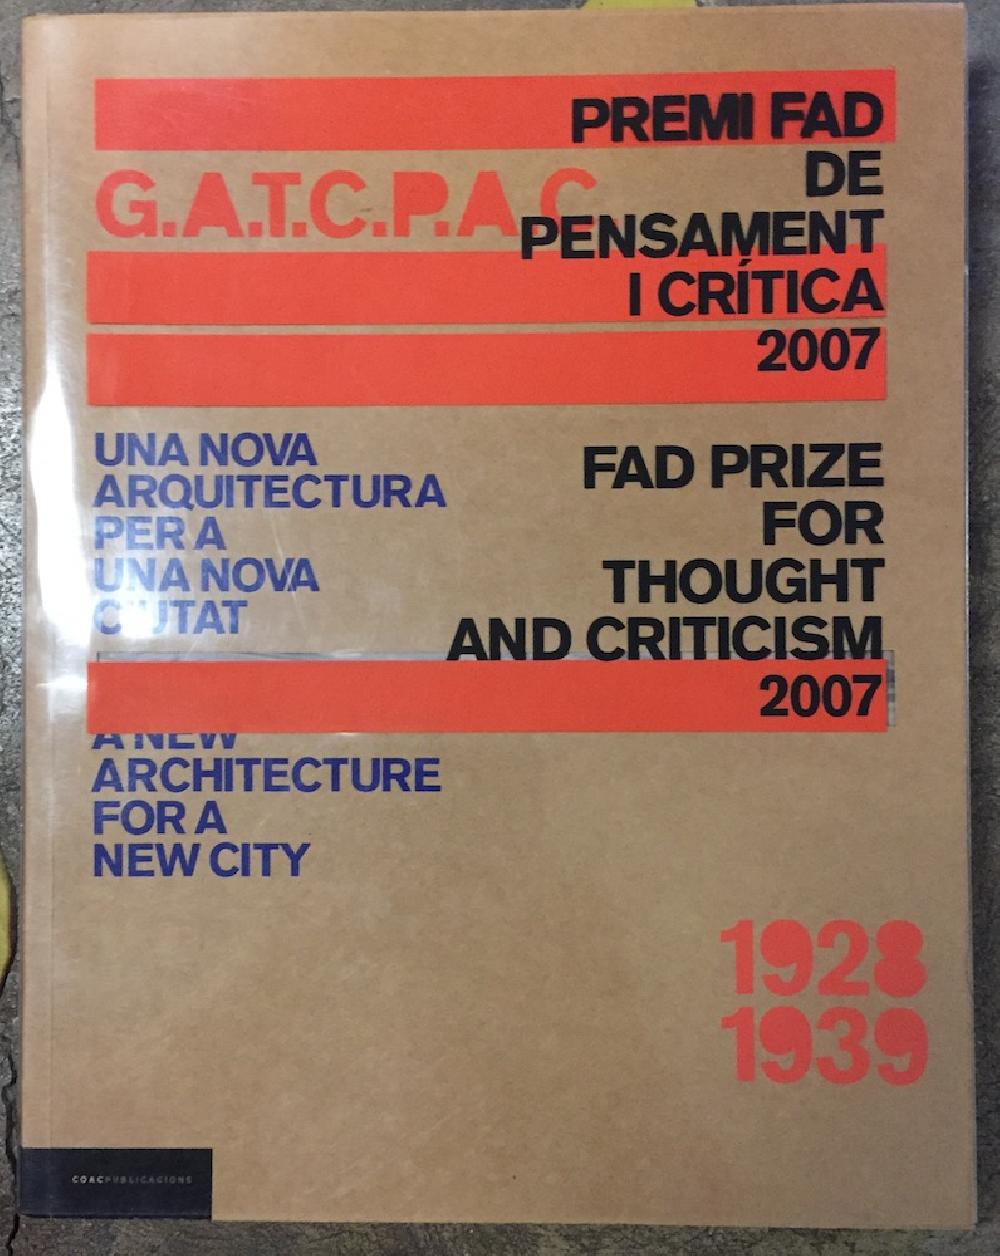 Una nueva arquitectura para una nueva ciudad / A new architecture for a new city G.A.T.C.P.A.C. 1928